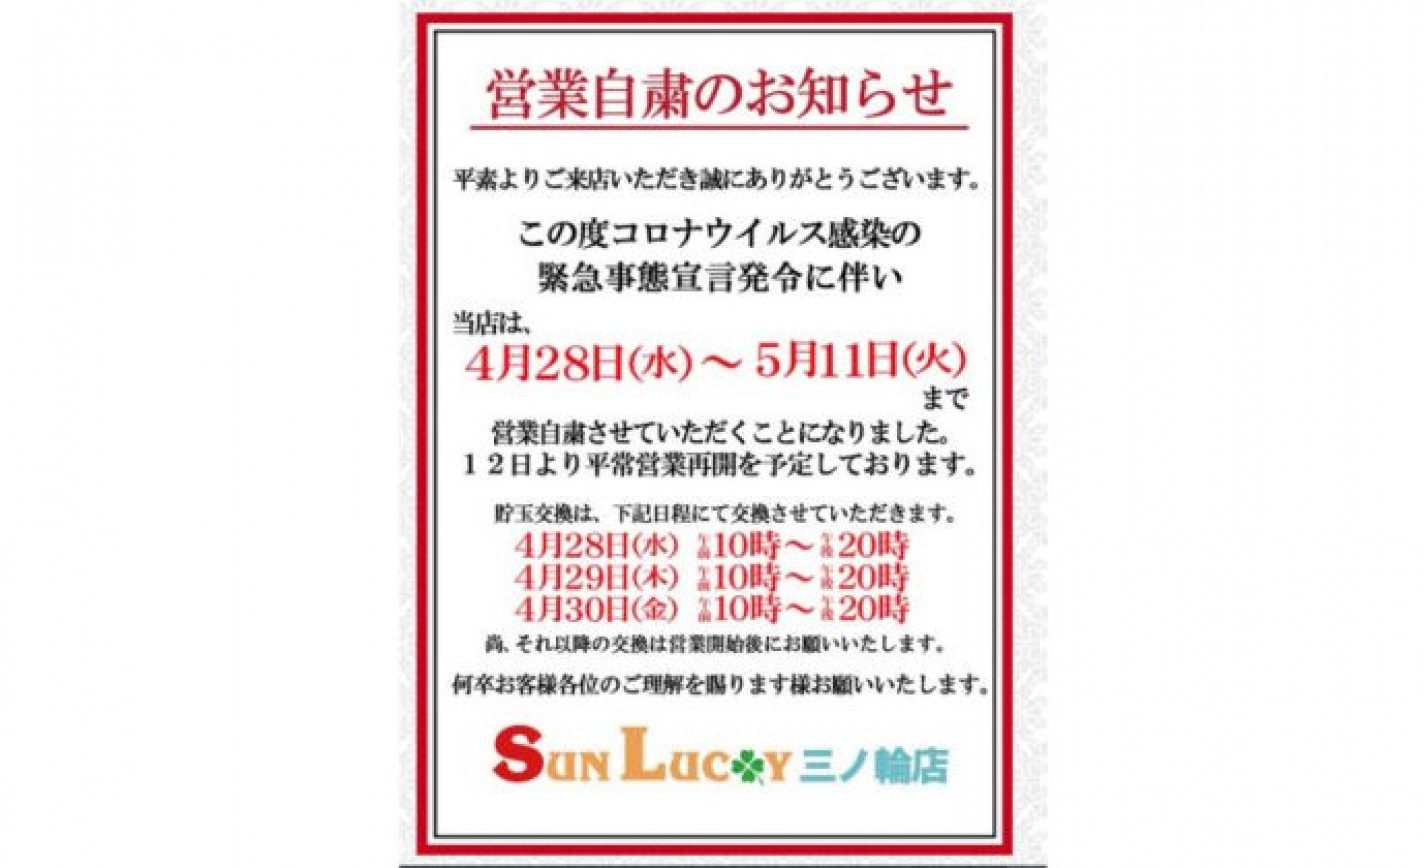 パチンコ店《サンラッキー》、緊急事態宣言に伴い東京、大阪、京都の4店舗を休業 eyecatch-image